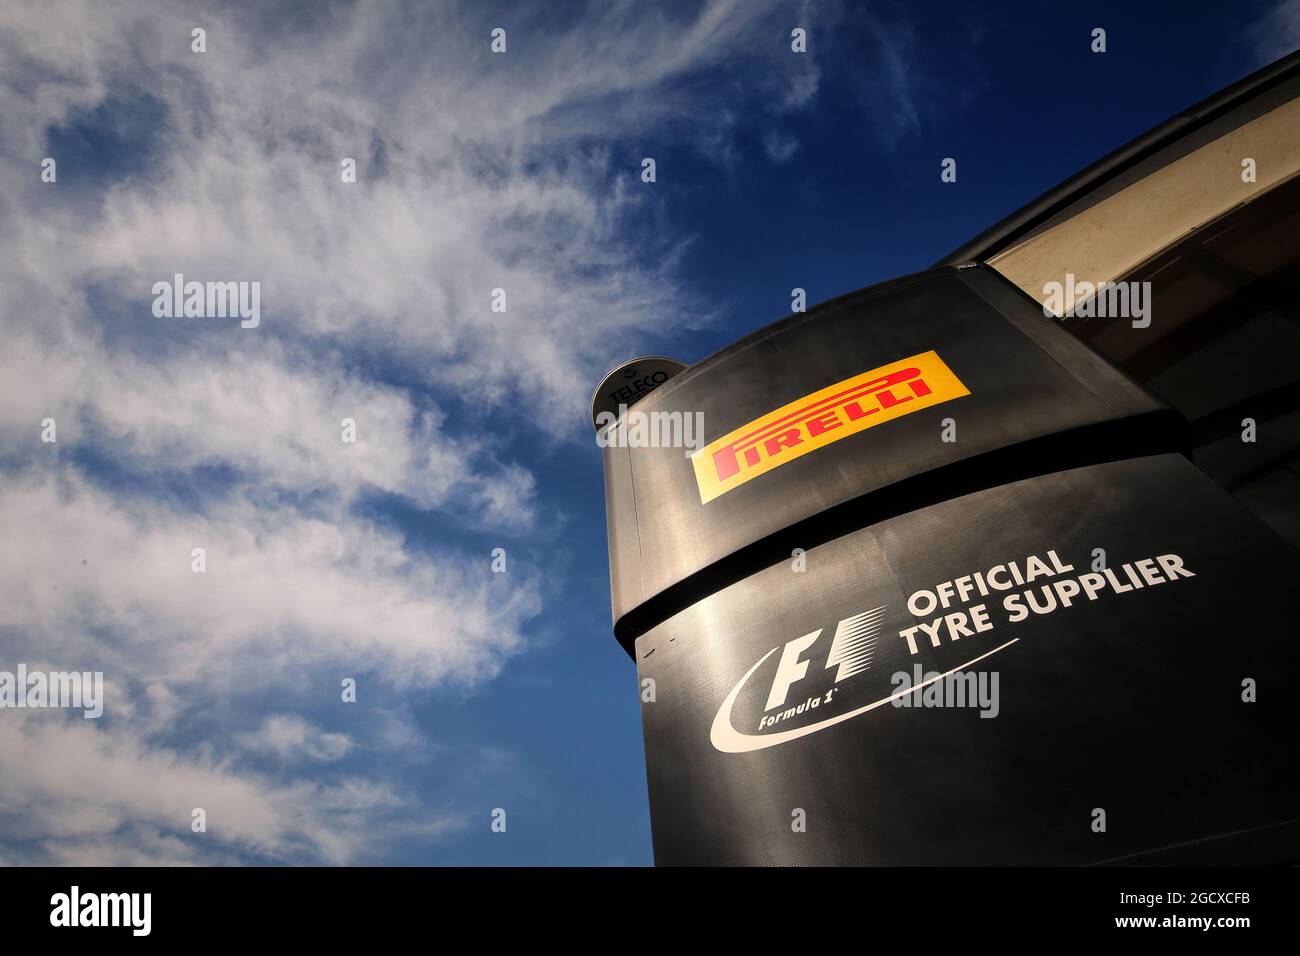 Pirelli motorhome. Test de Formule 1, jour 4, jeudi 2 mars 2017. Barcelone, Espagne. Banque D'Images